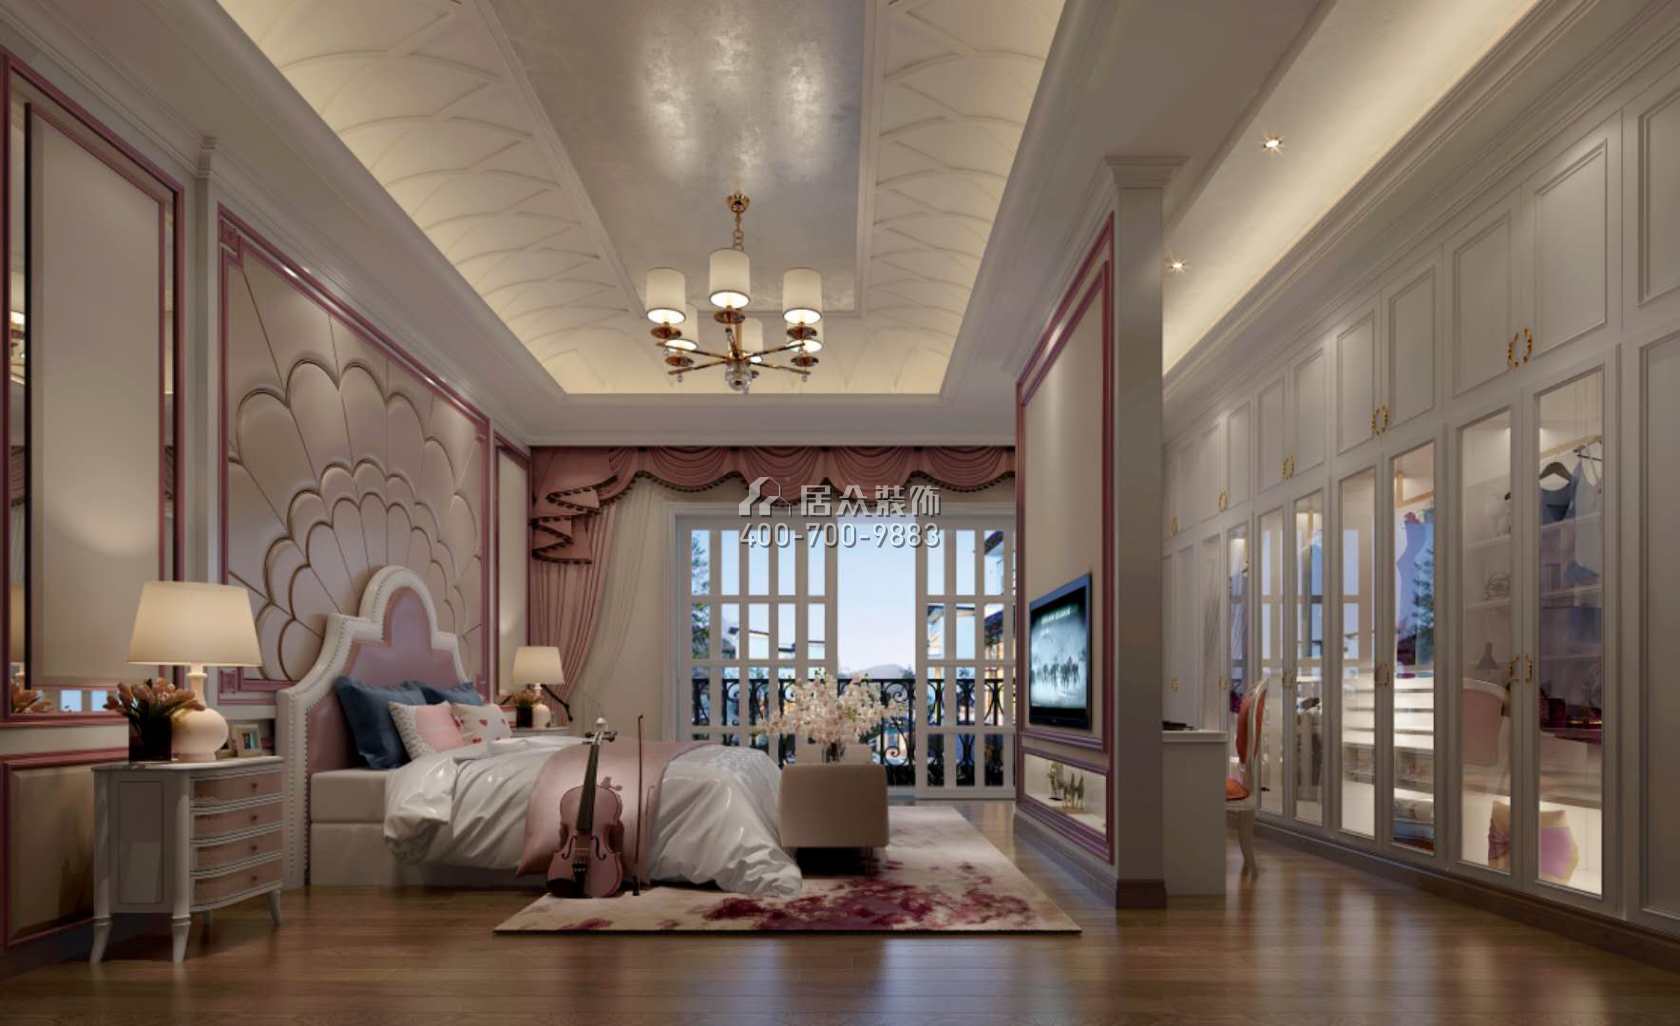 碧桂園太陽城405平方米歐式風格別墅戶型臥室裝修效果圖